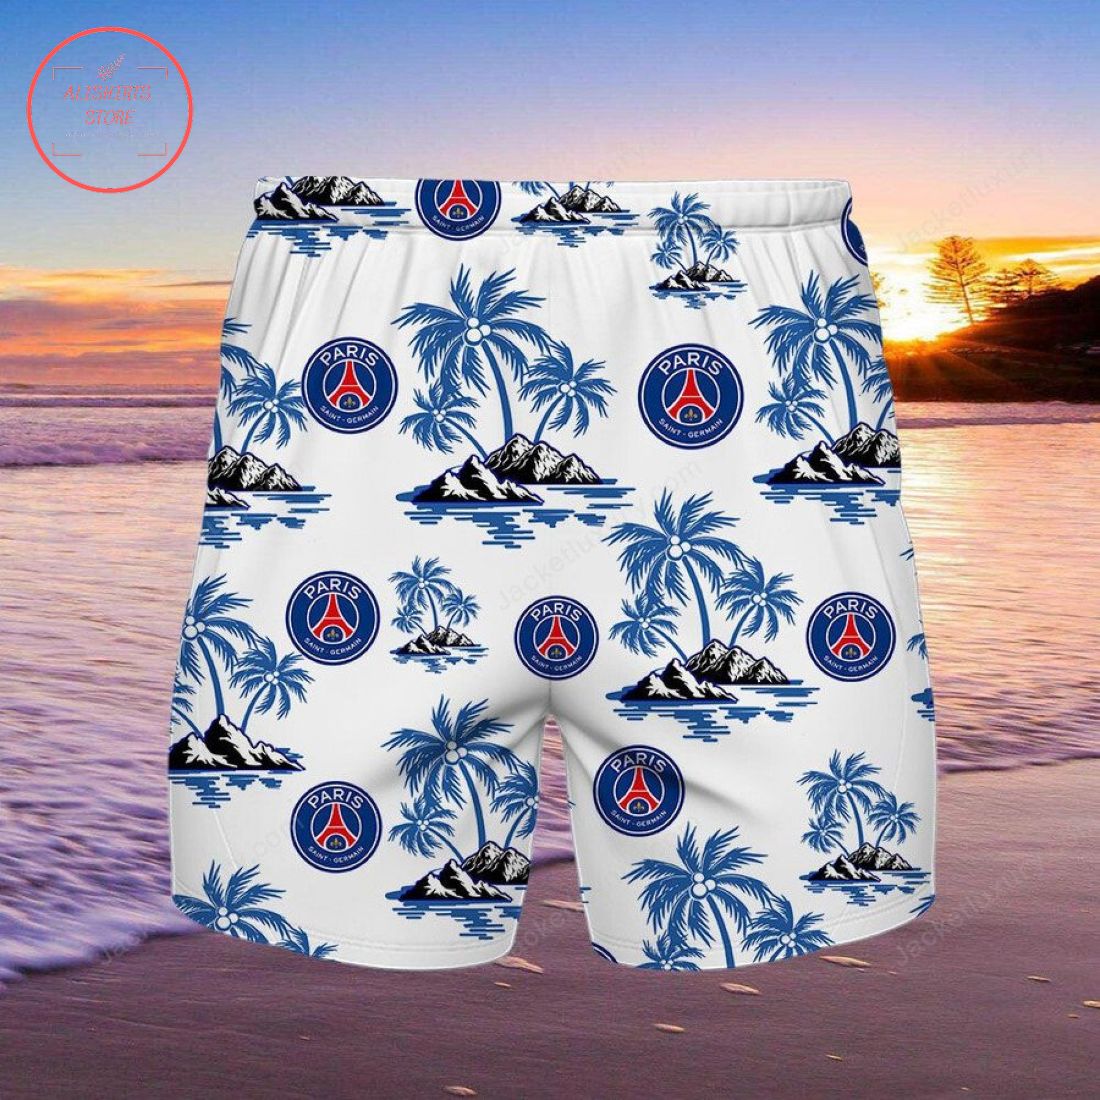 Paris Saint-Germain Hawaiian shirt and shorts